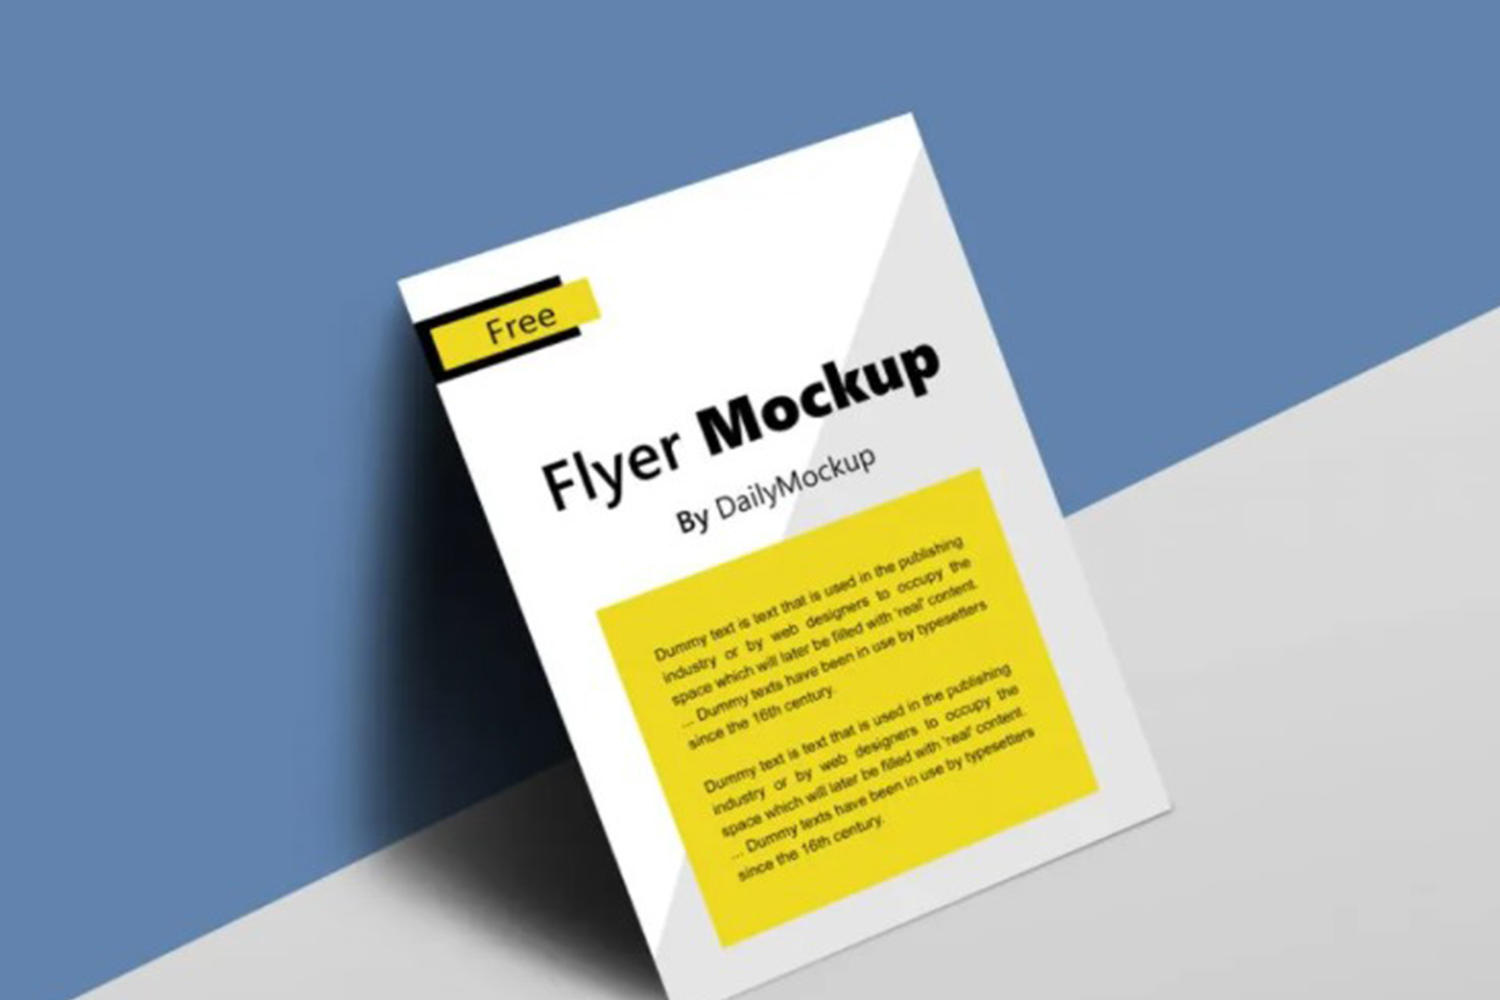 Flyer Mockup Free Download